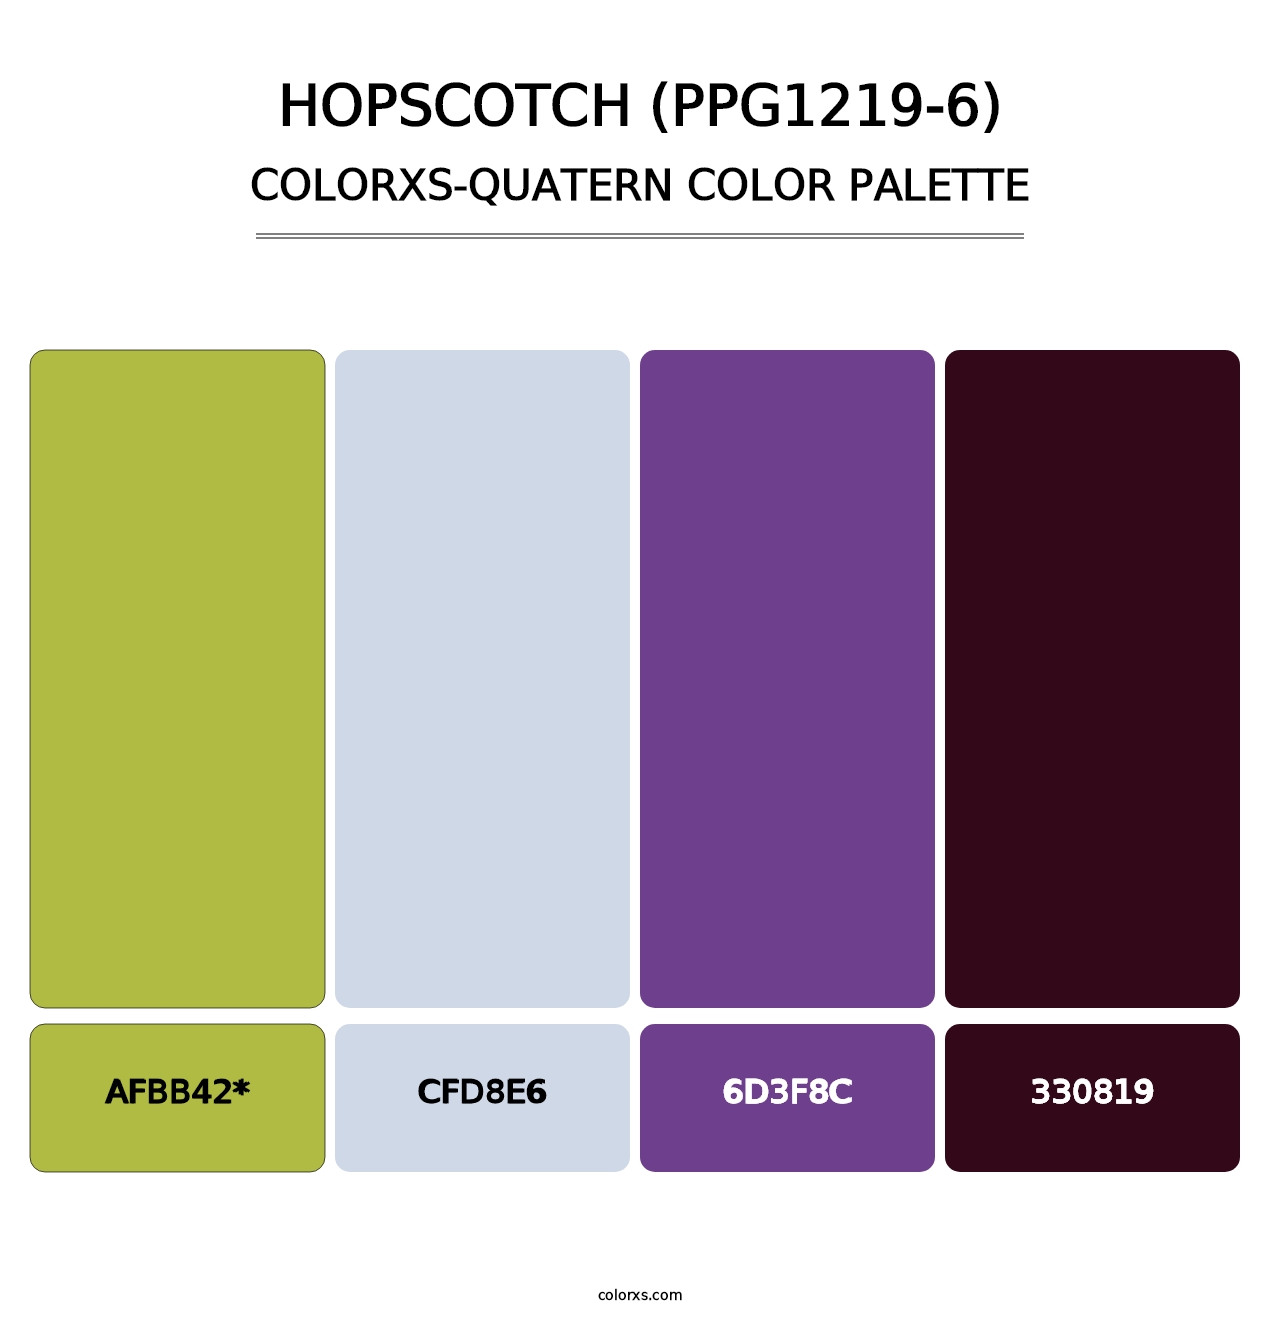 Hopscotch (PPG1219-6) - Colorxs Quatern Palette